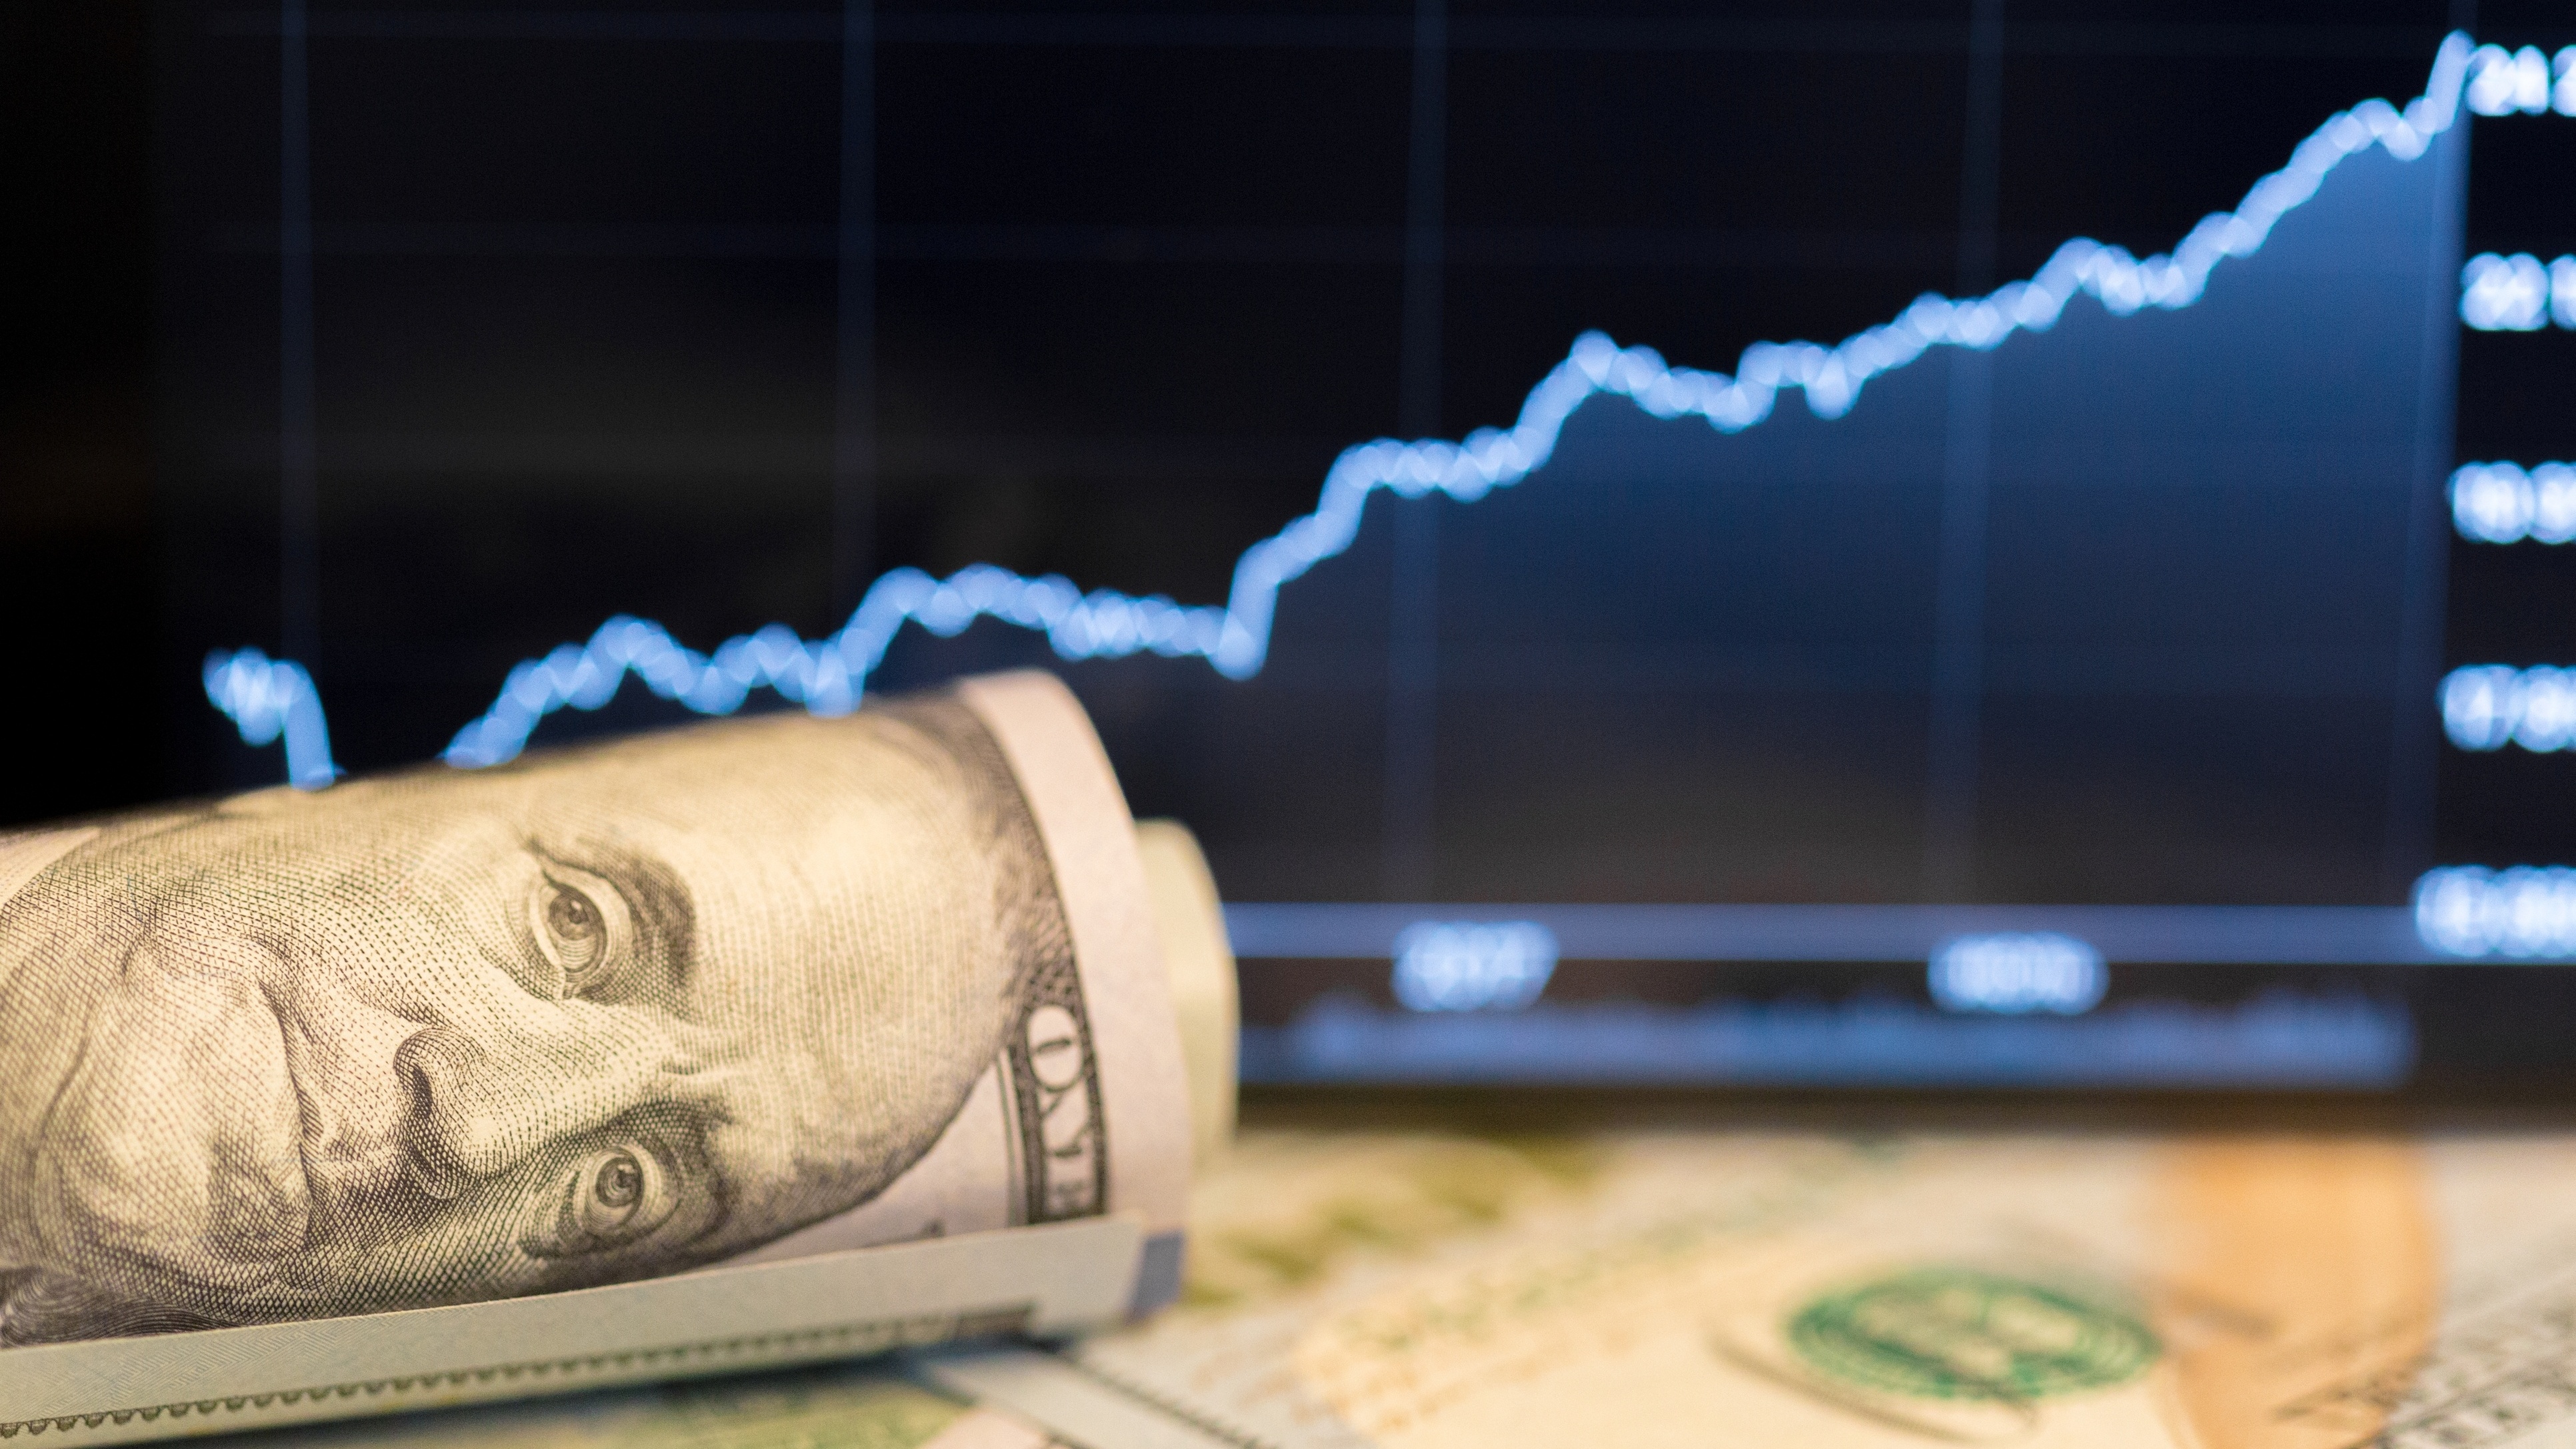 Um cofrinho com notas de Dólares dos Estados Unidos sobre um sofá azul.  Economia e investimentos. Stock Photo